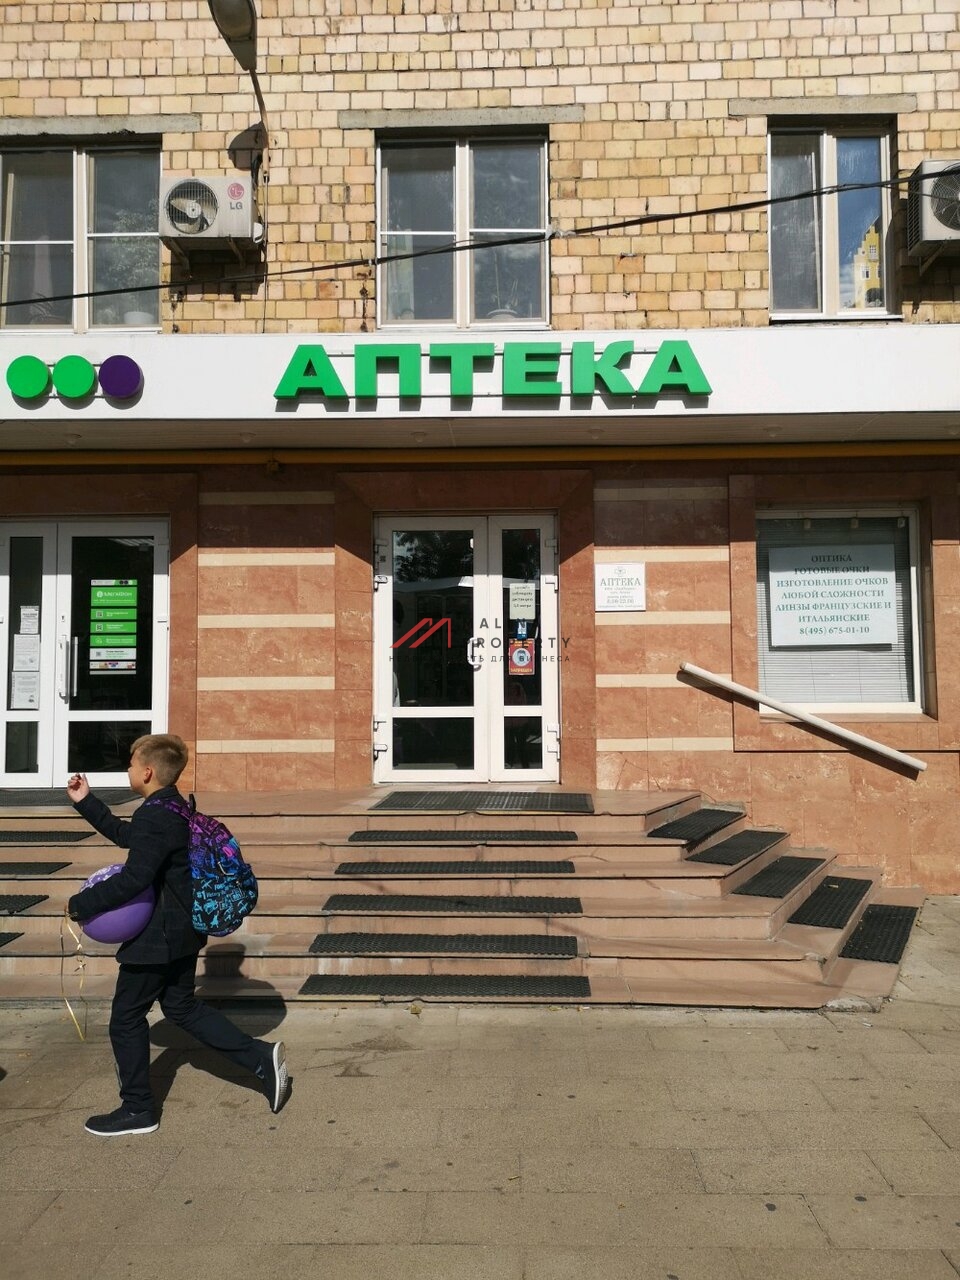 Аренда торгового помещения напротив метро Автозаводская